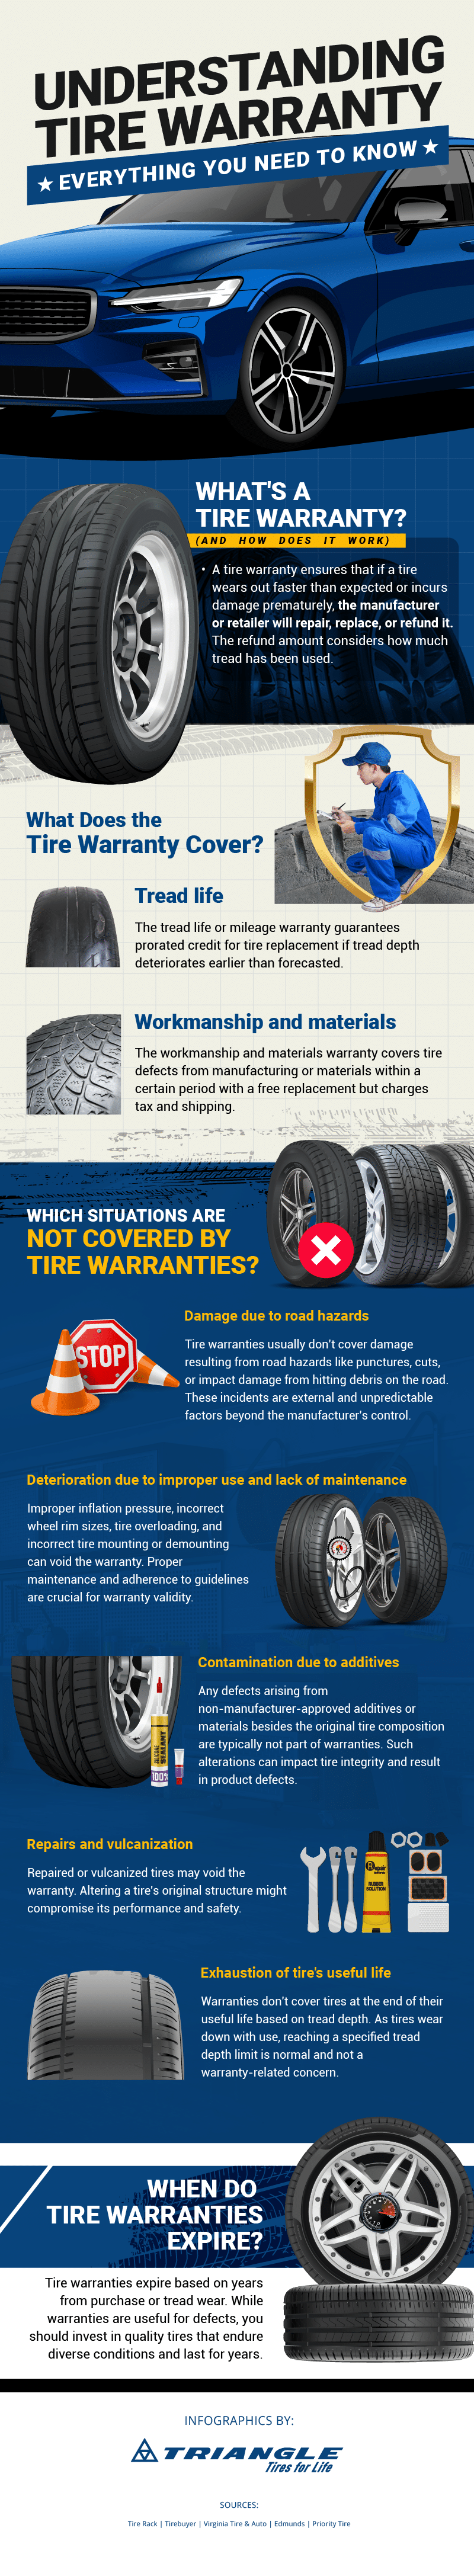 Understanding Tire Warranty